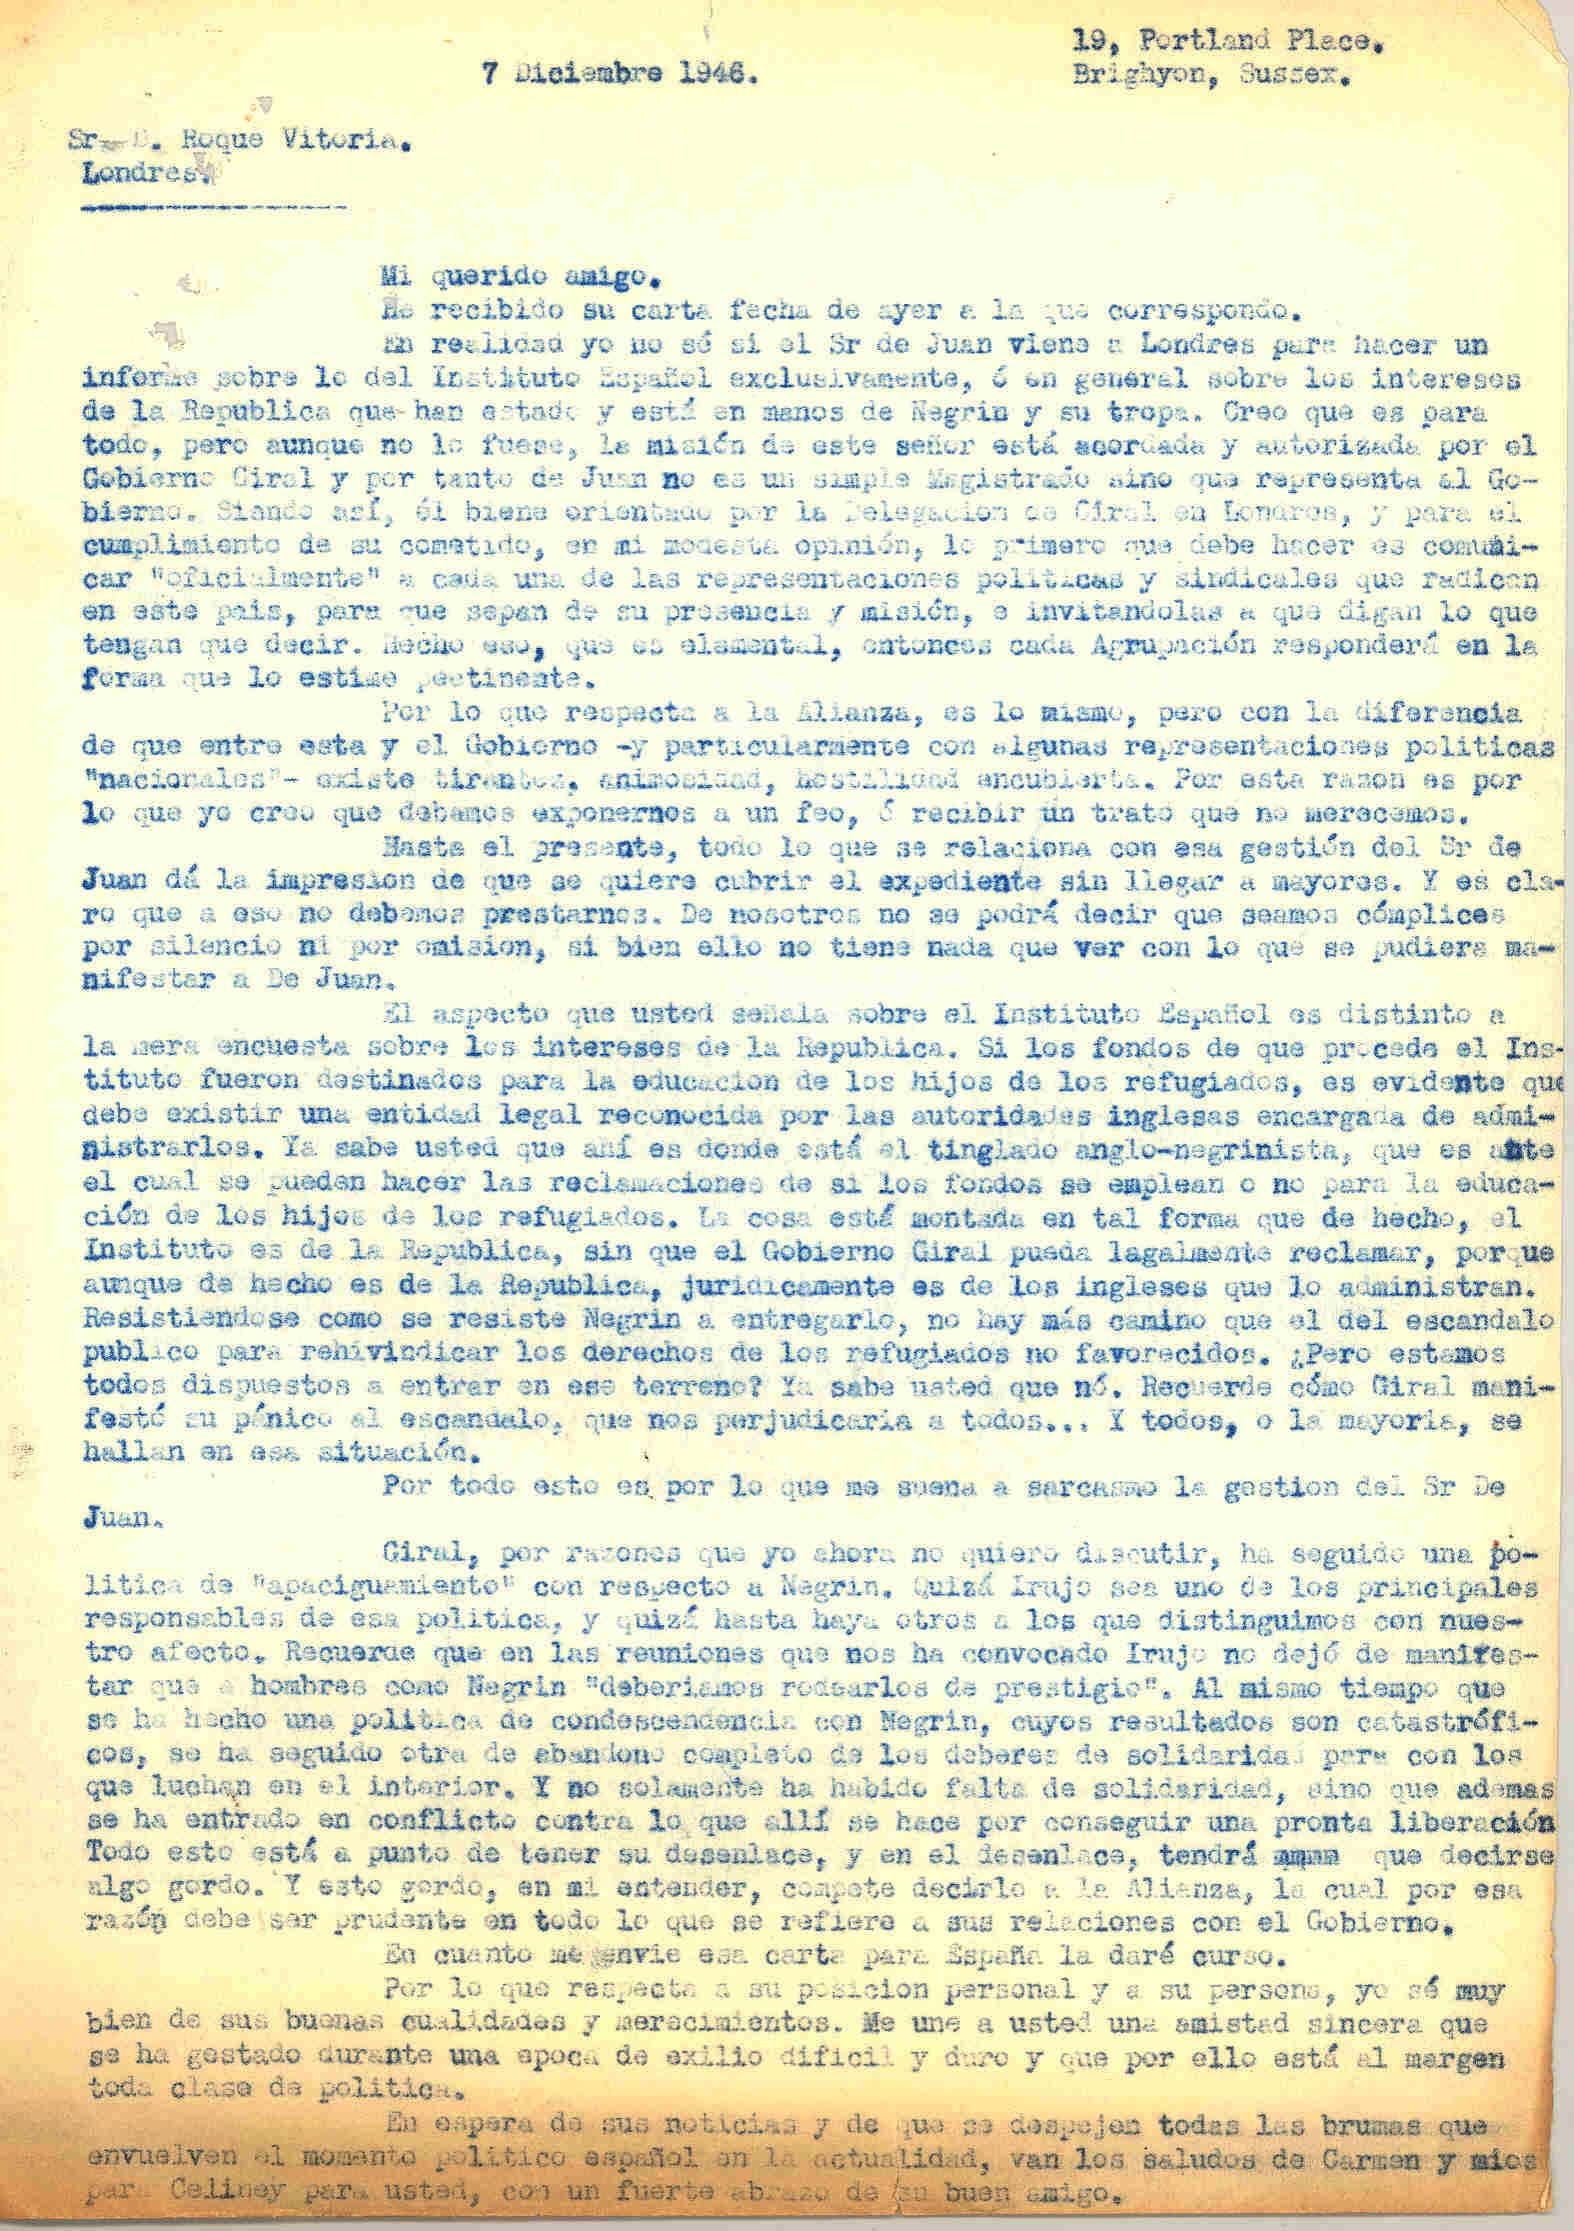 Carta a Roque Victoria en la que habla de que la visita de Carlos De Juan está autorizada por el gobierno Giral con el que la Alianza tiene tirantez.